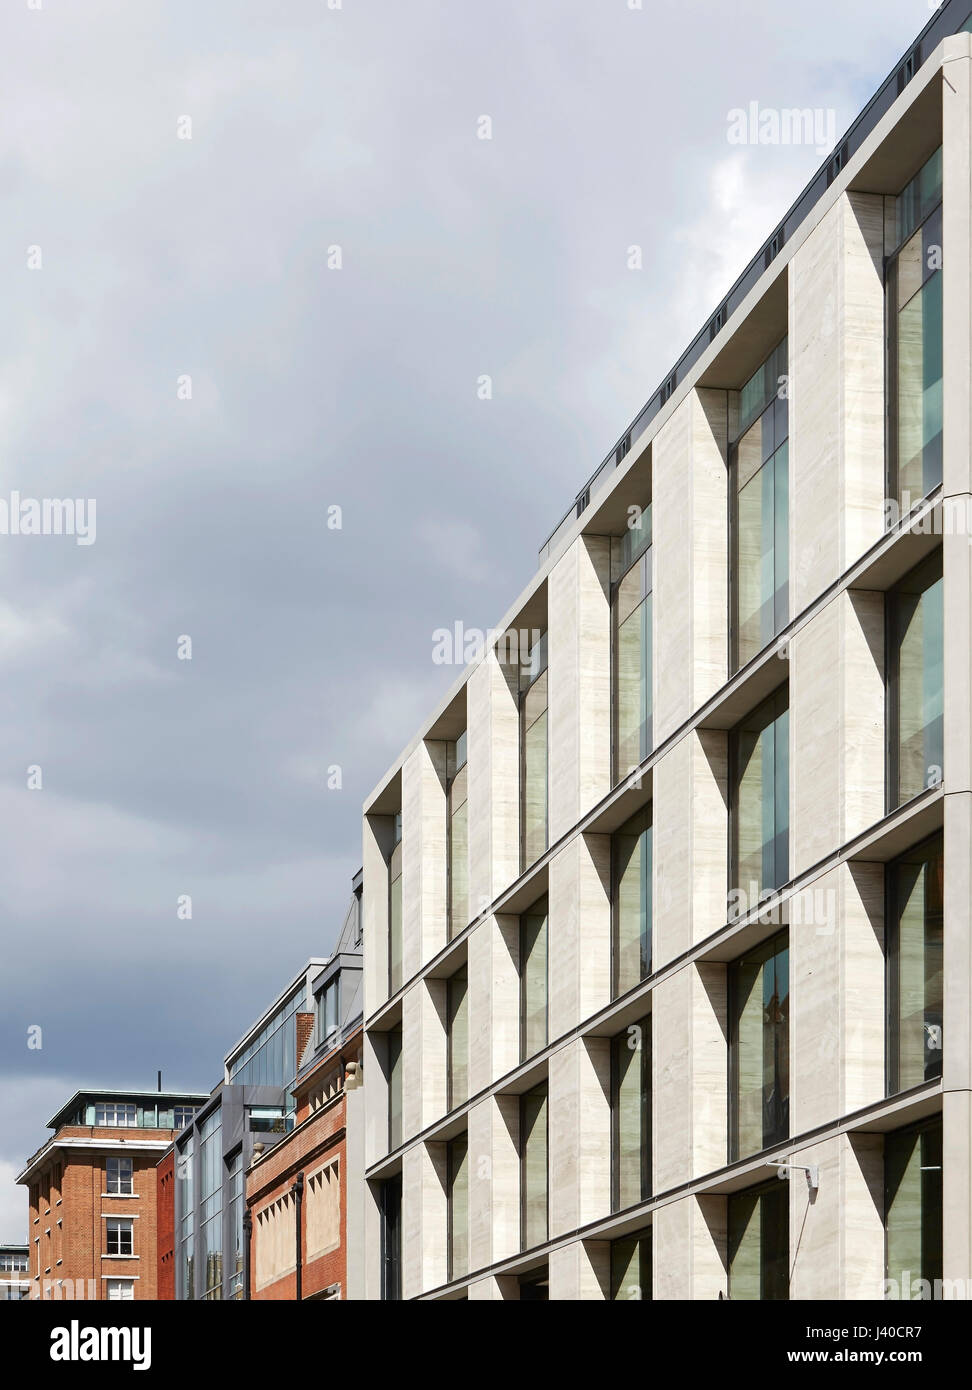 Detail der Straßenfassade mit Kontext. Chancery Lane, London, Vereinigtes Königreich. Architekt: Bennetts Associates Architects, 2015. Stockfoto